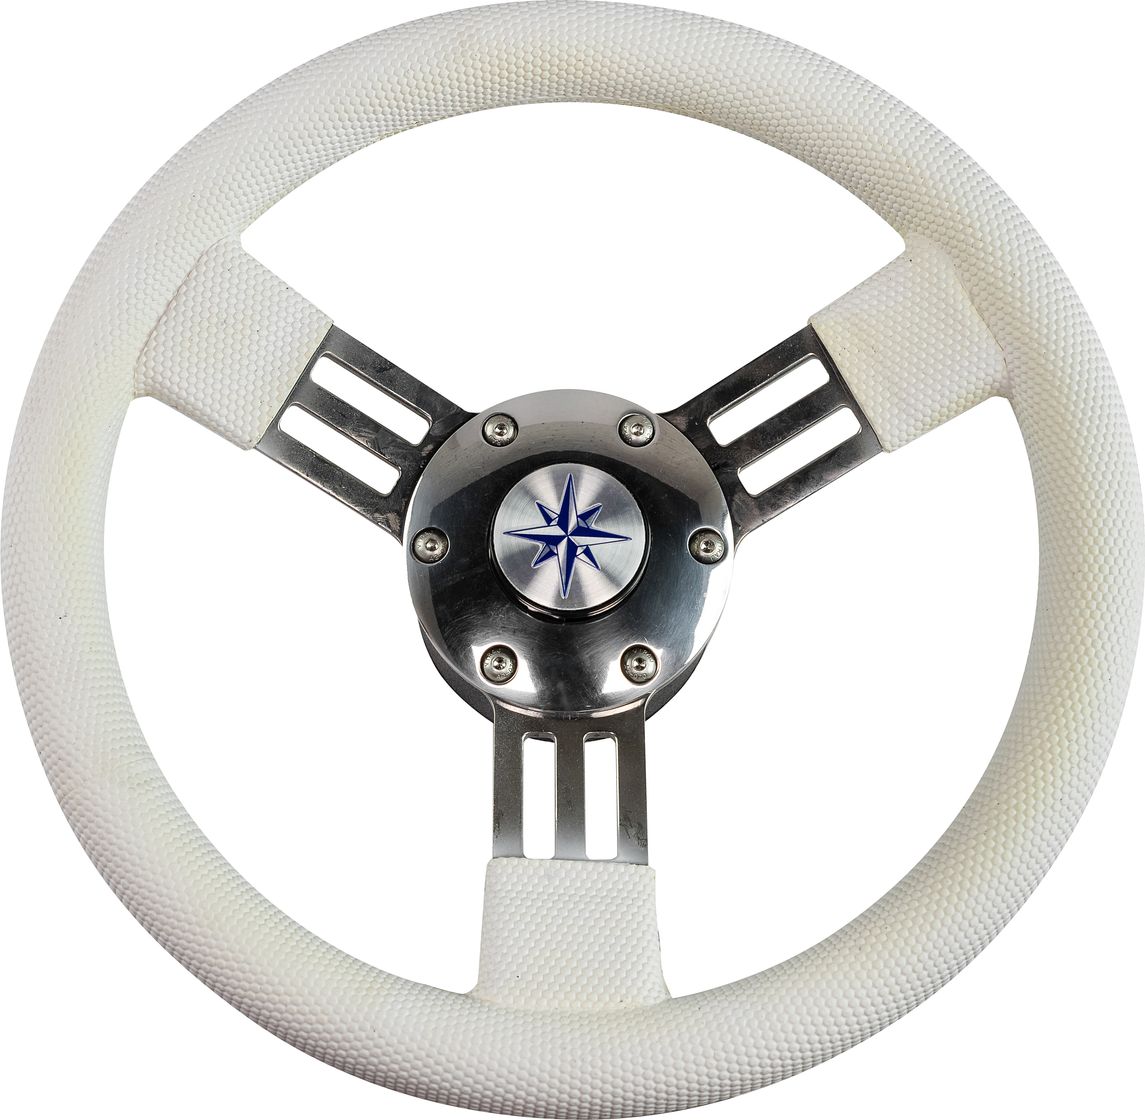 Рулевое колесо PEGASO обод белый, спицы серебряные д. 300 мм VN13327-08 колесо для трюкового самоката sub алюминий подшипники abec9 100мм анодированное черное 00 180097